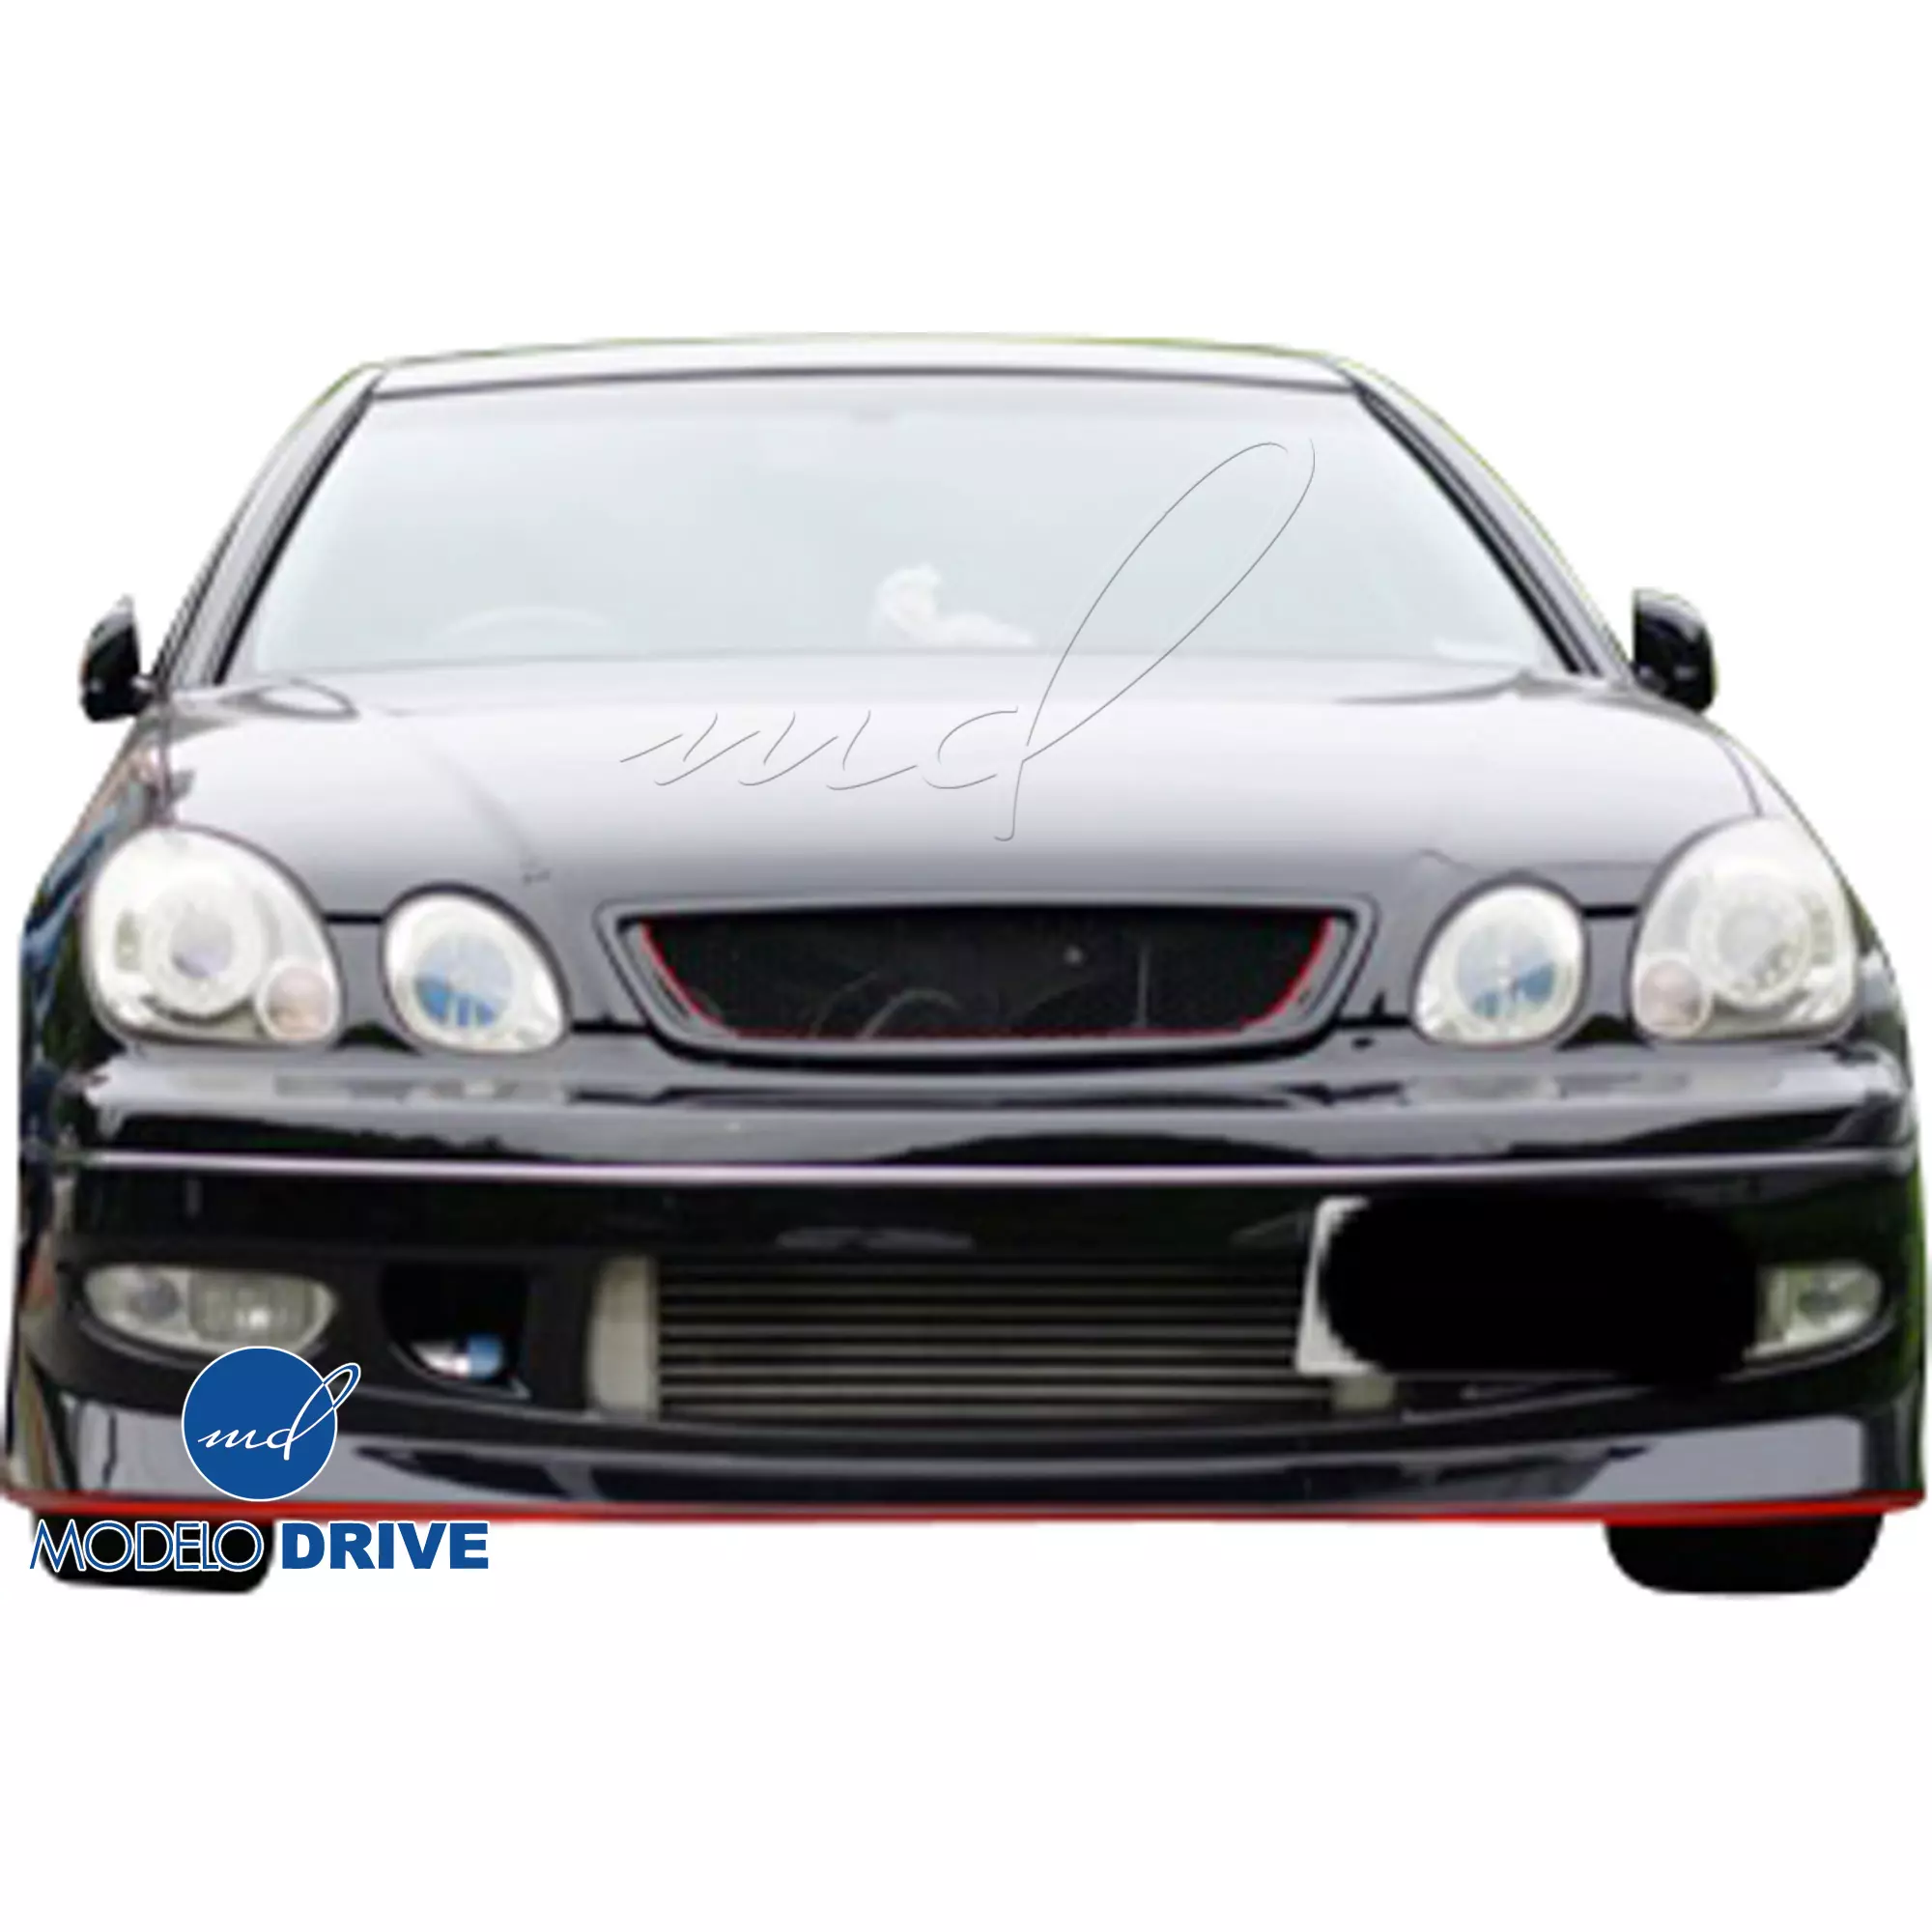 ModeloDrive FRP KAZA Body Kit 4pc > Lexus GS Series GS400 GS300 1998-2005 - Image 13